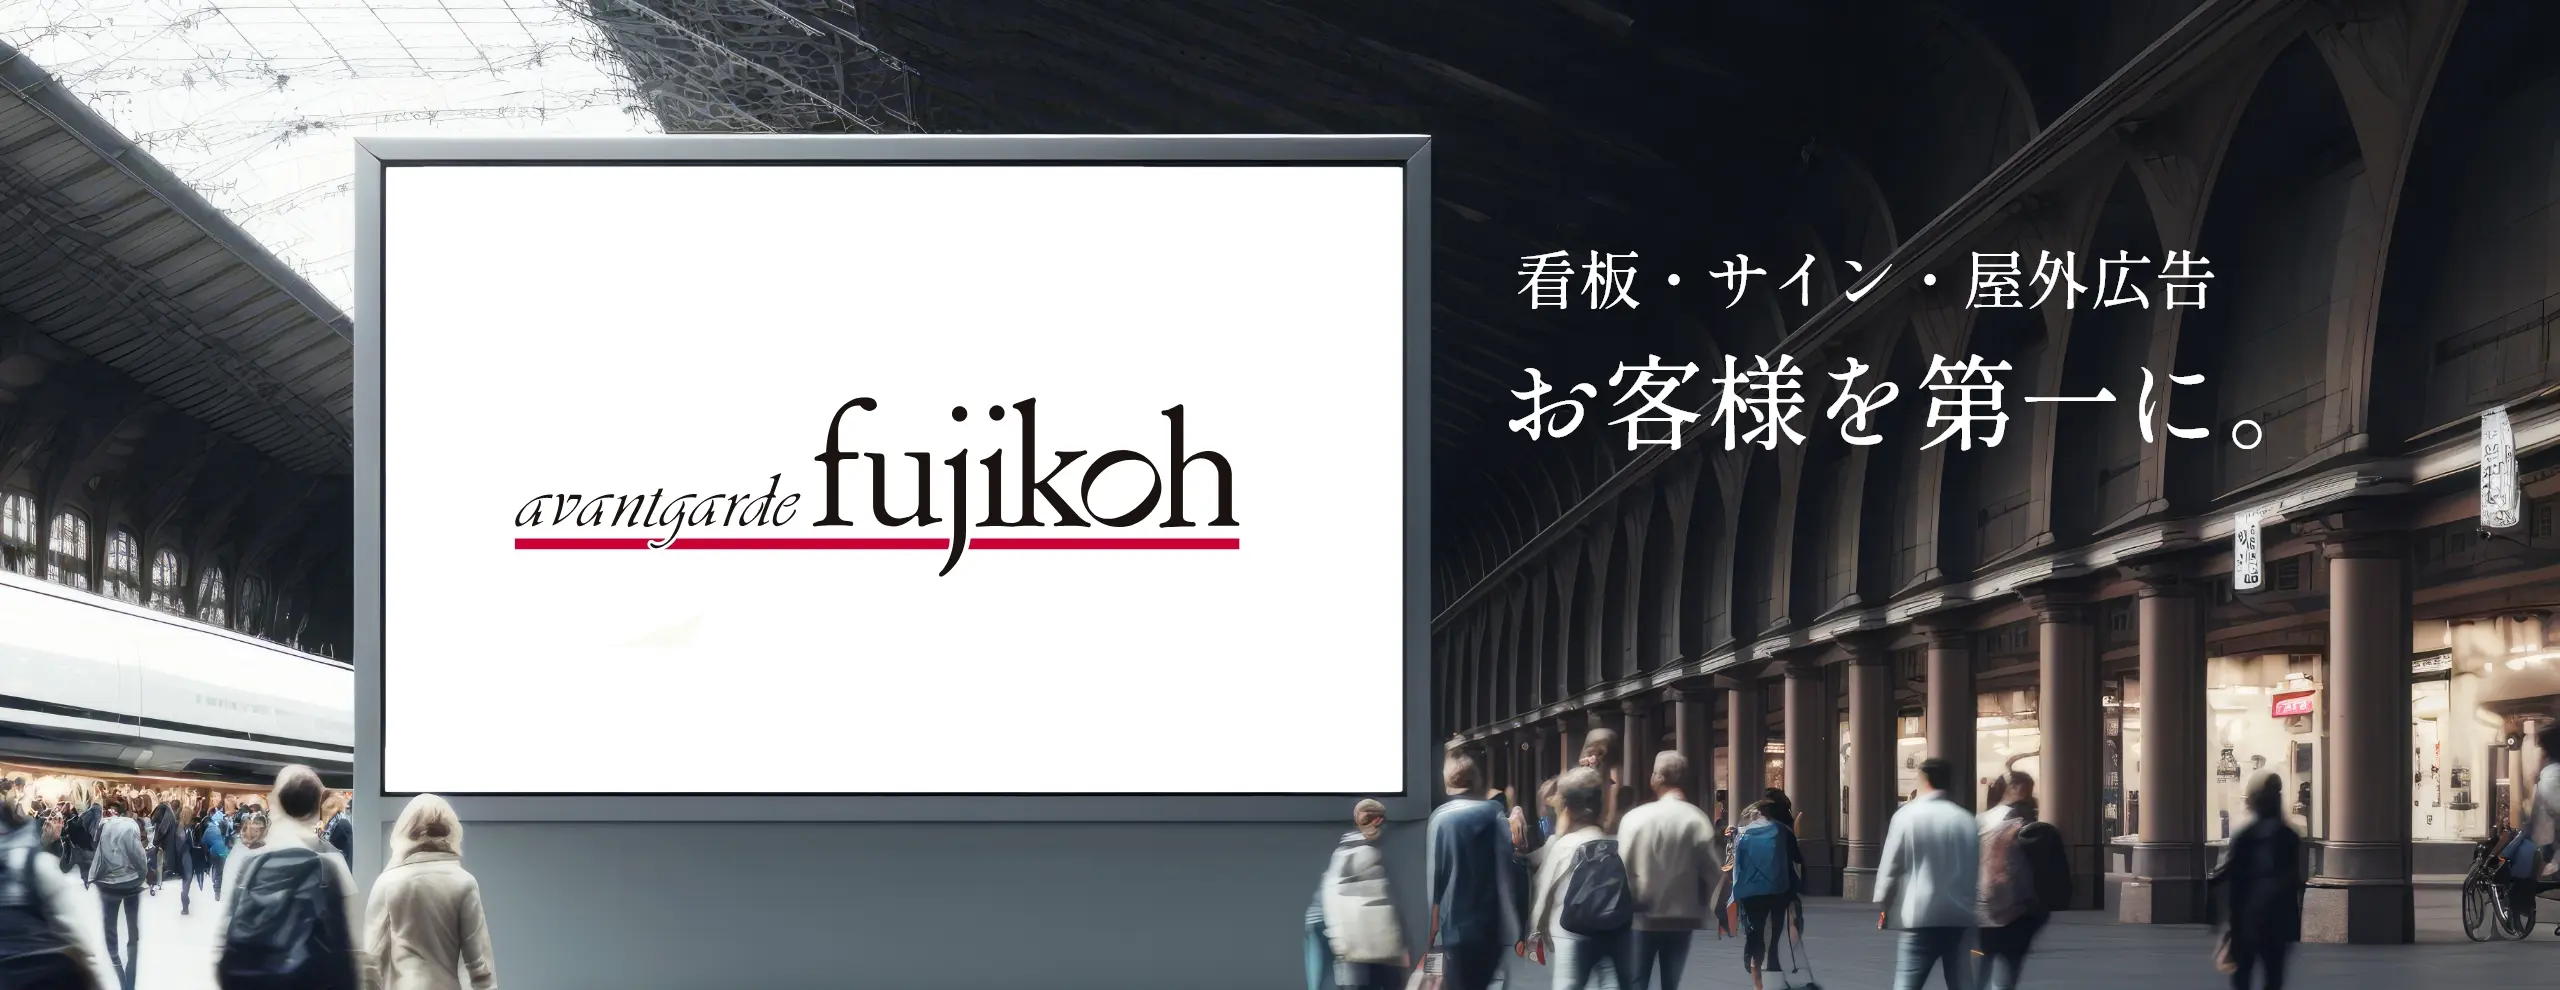 看板・サイン・屋外広告、お客様を第一に。avantgarde fujikoh(アバンギャルドフジコウ)